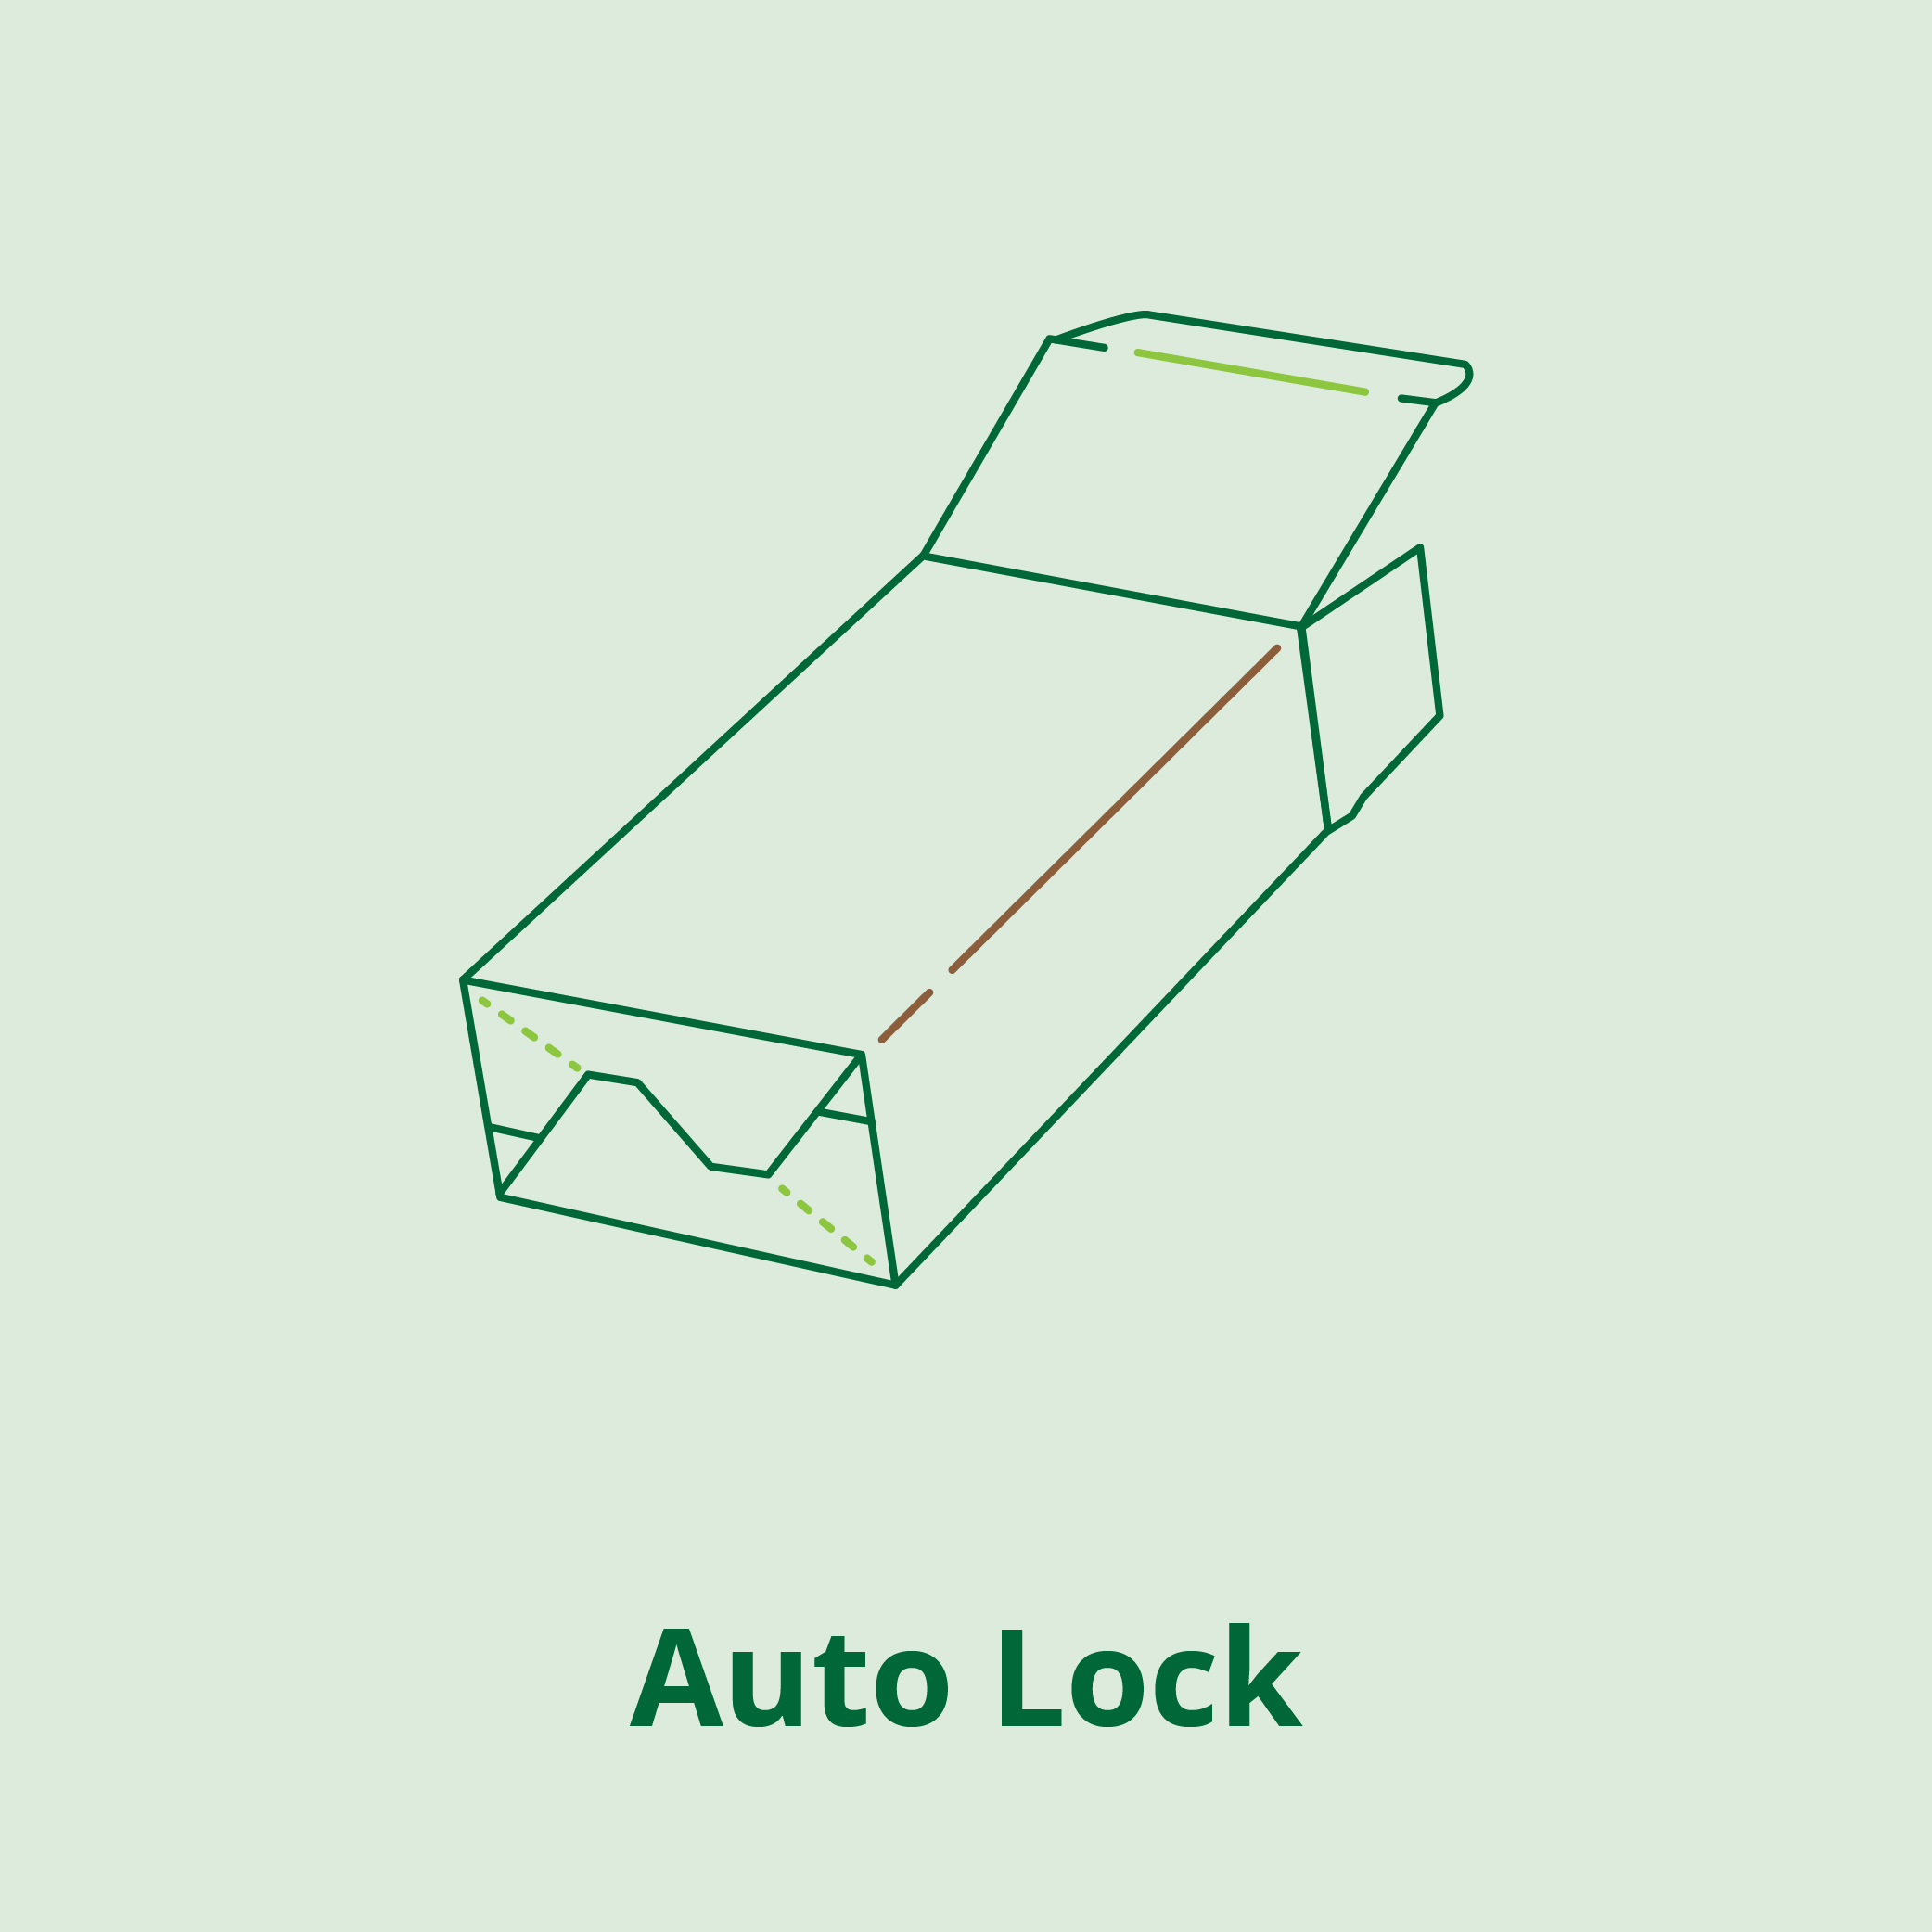 Eco Auto Lock